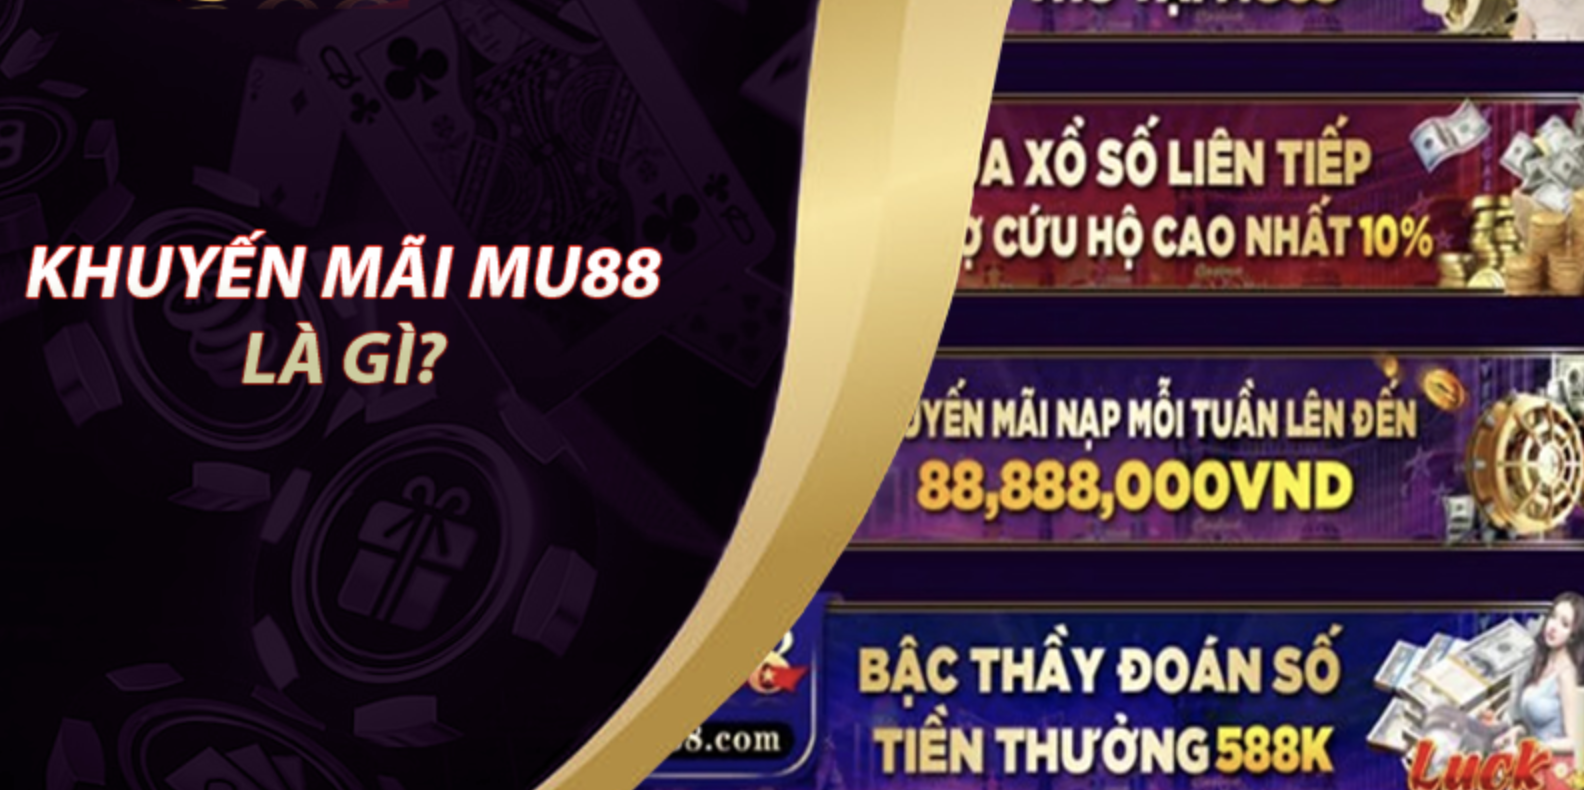 MU88 - Trang Chủ Mu88 Casino Đăng Ký Tải App Mu88 Tặng 99k